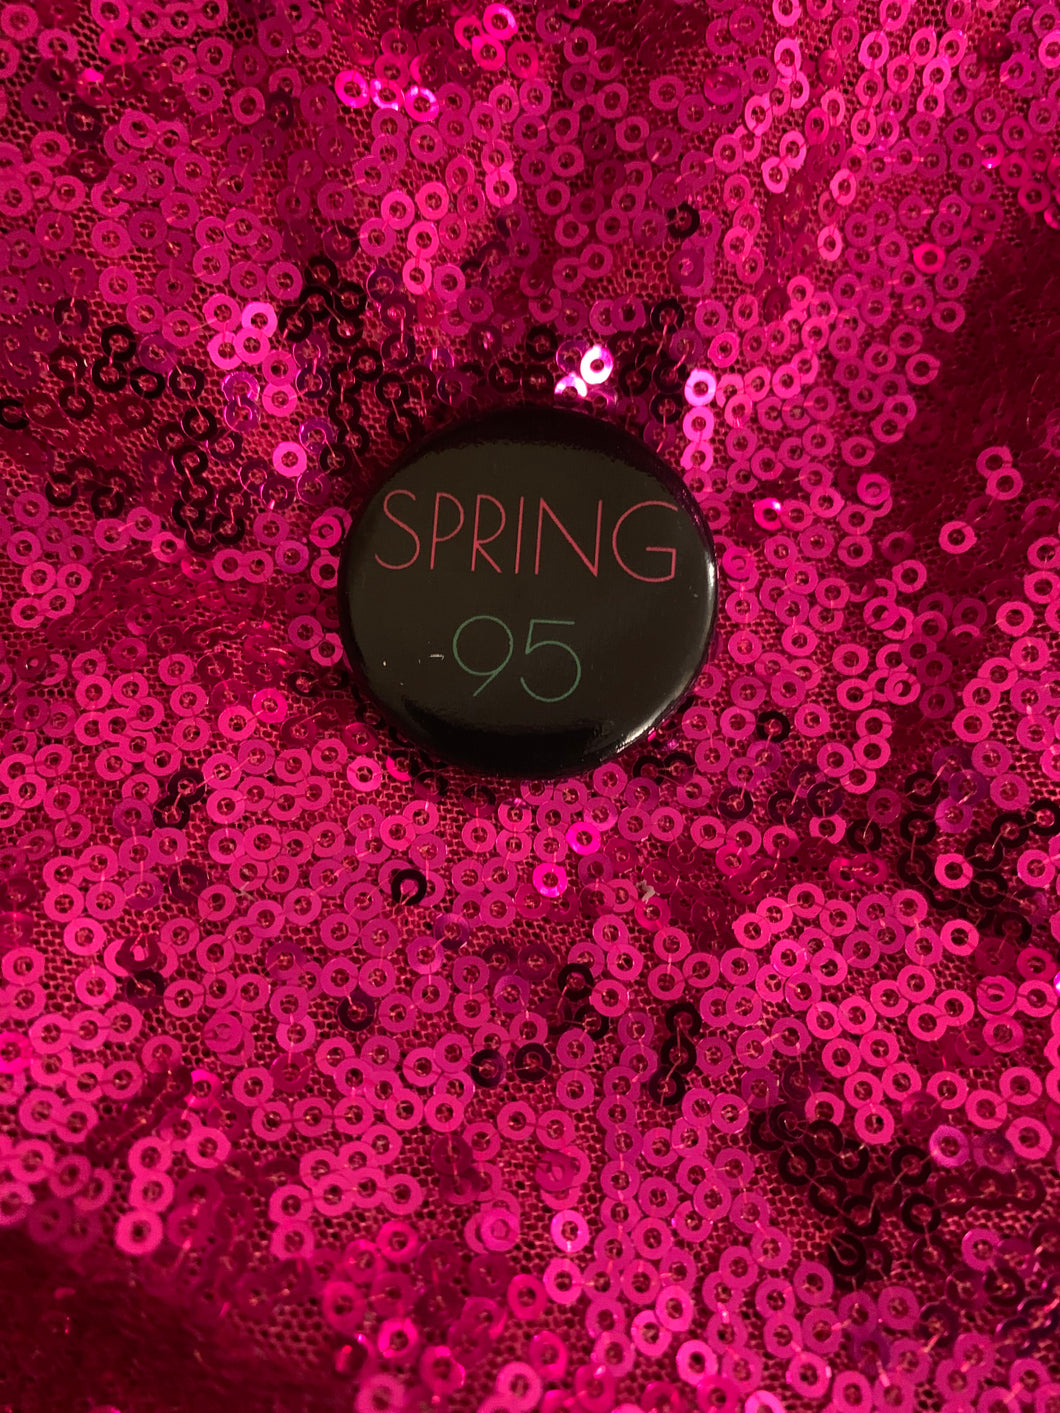 Pretty Spring 95 Button